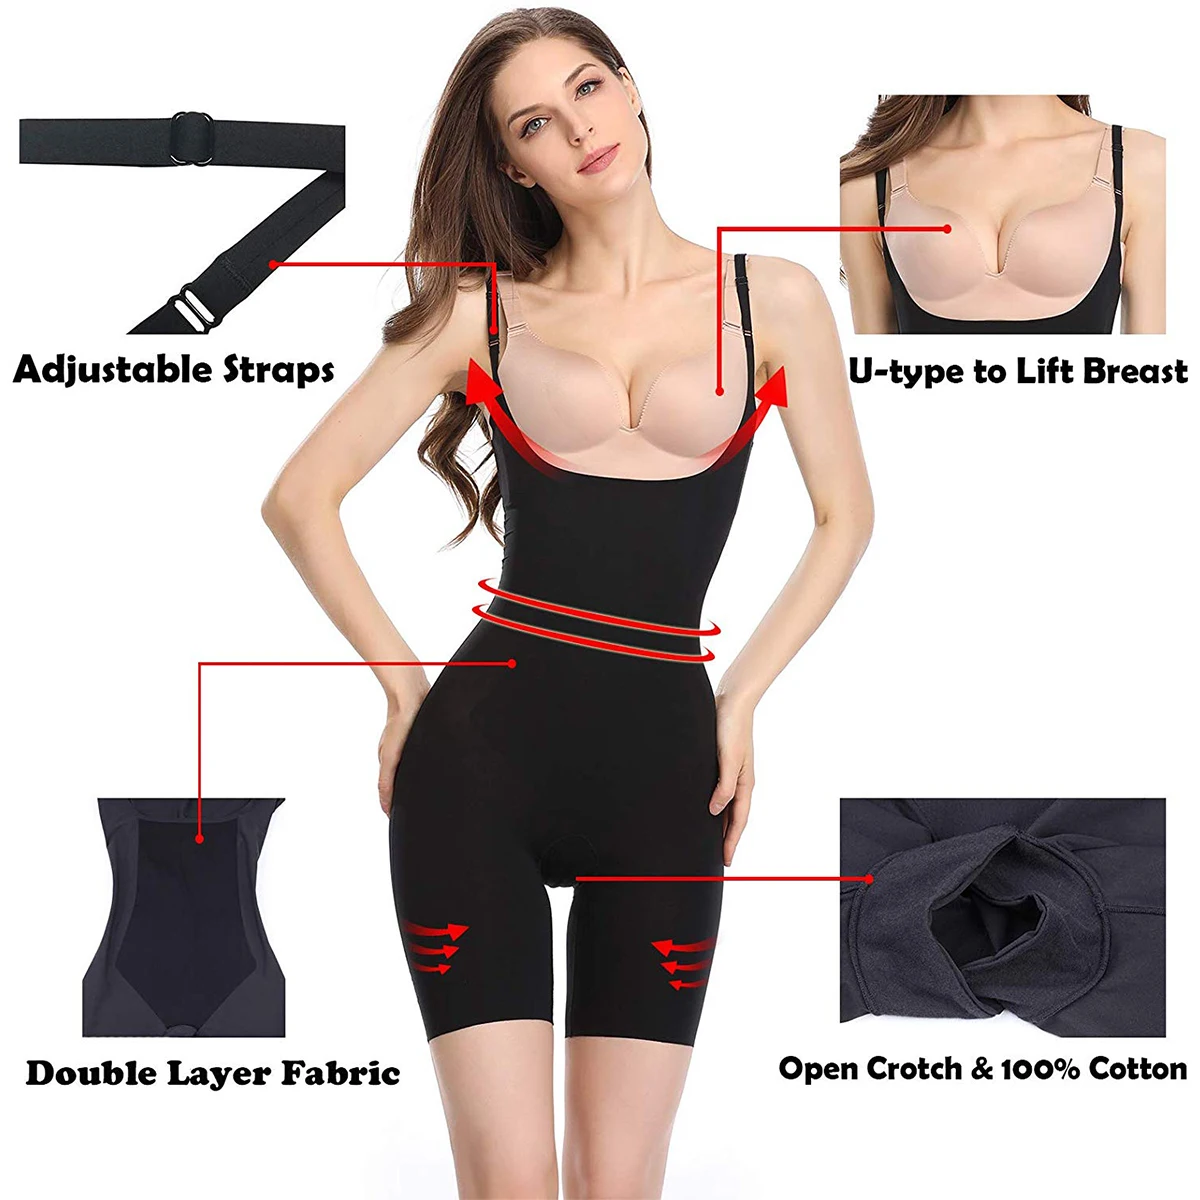 Joyshaper Silm Body Shaper для женщин, регулируемый животик, контроль талии, тренажер, сексуальный, открытый бюст, боди, подтяжки, нижнее белье, плюс размер